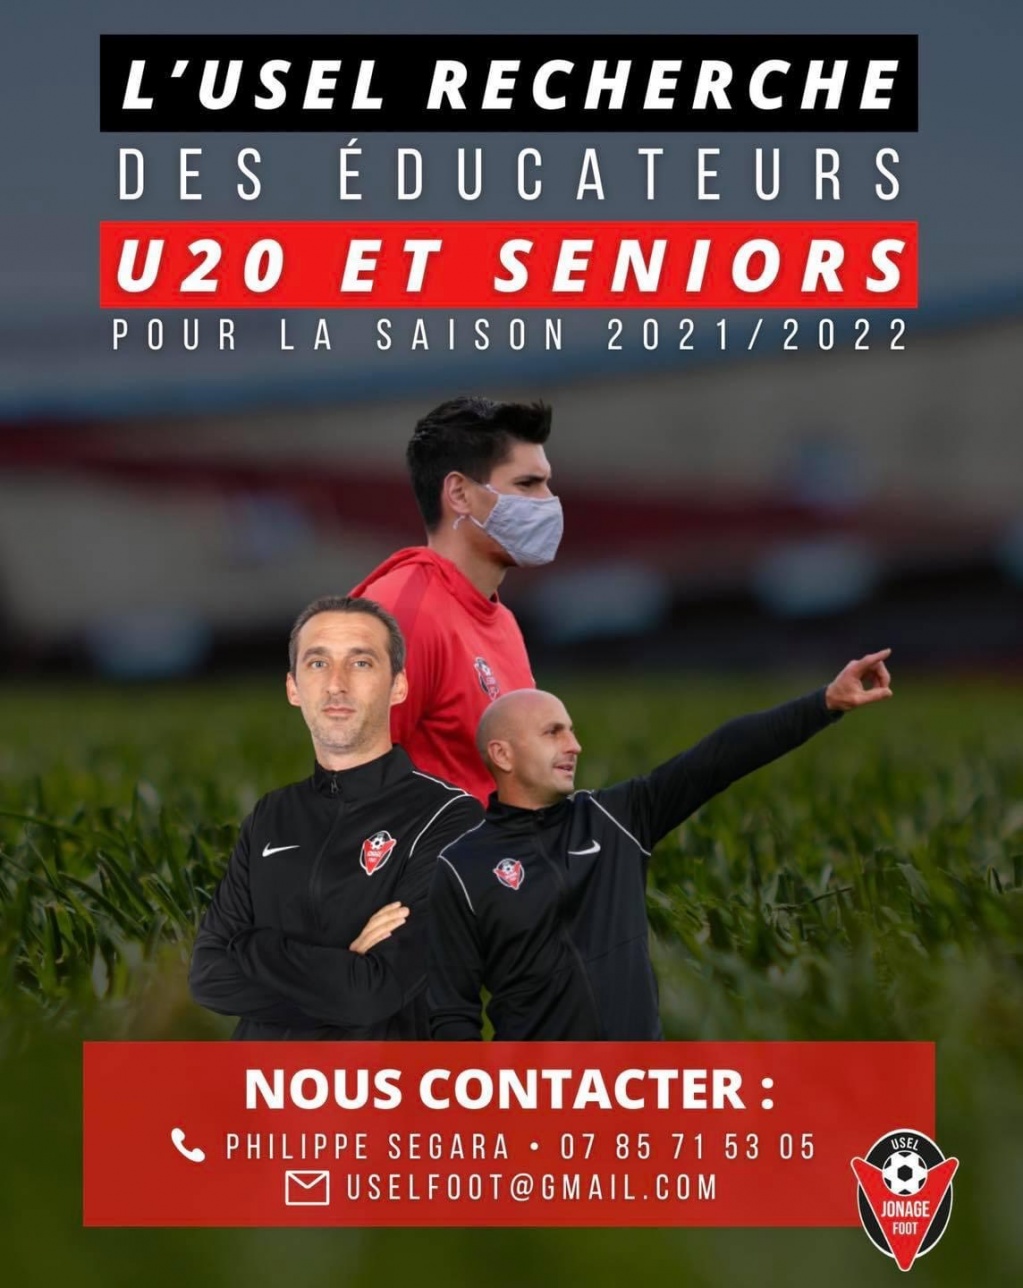 USEL FOOT JONAGE RECRUTE EDUCATEURS SENIORS U20